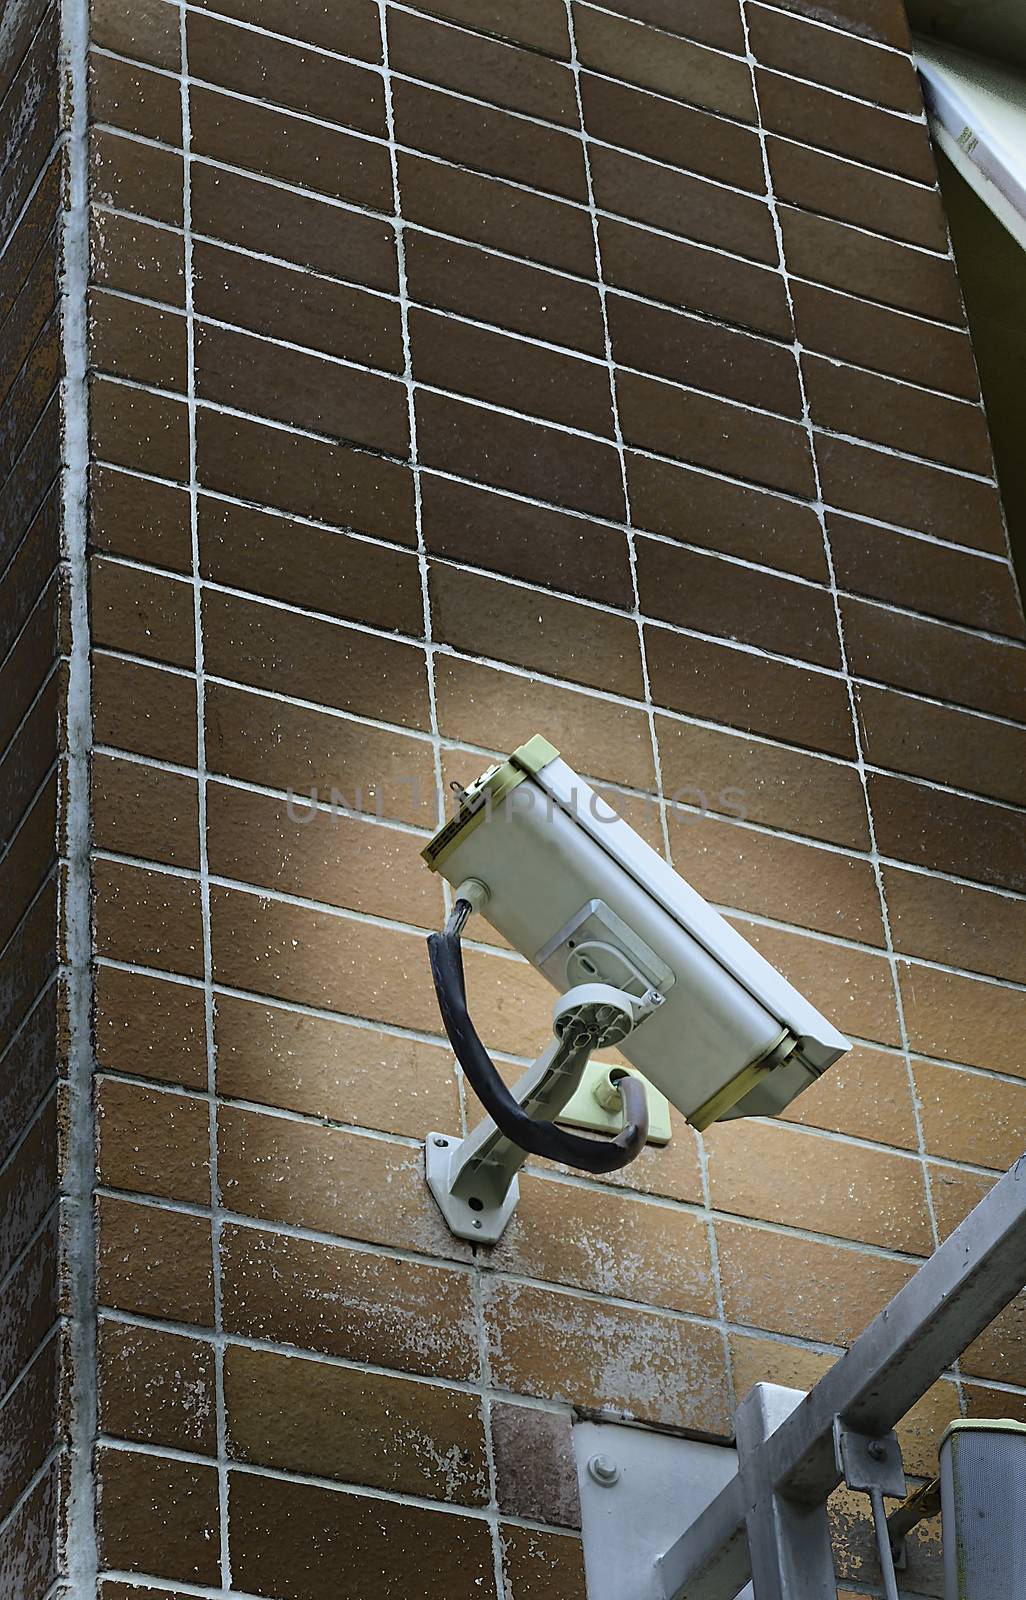 CCTV Camera Security Guard Monitor by kobfujar